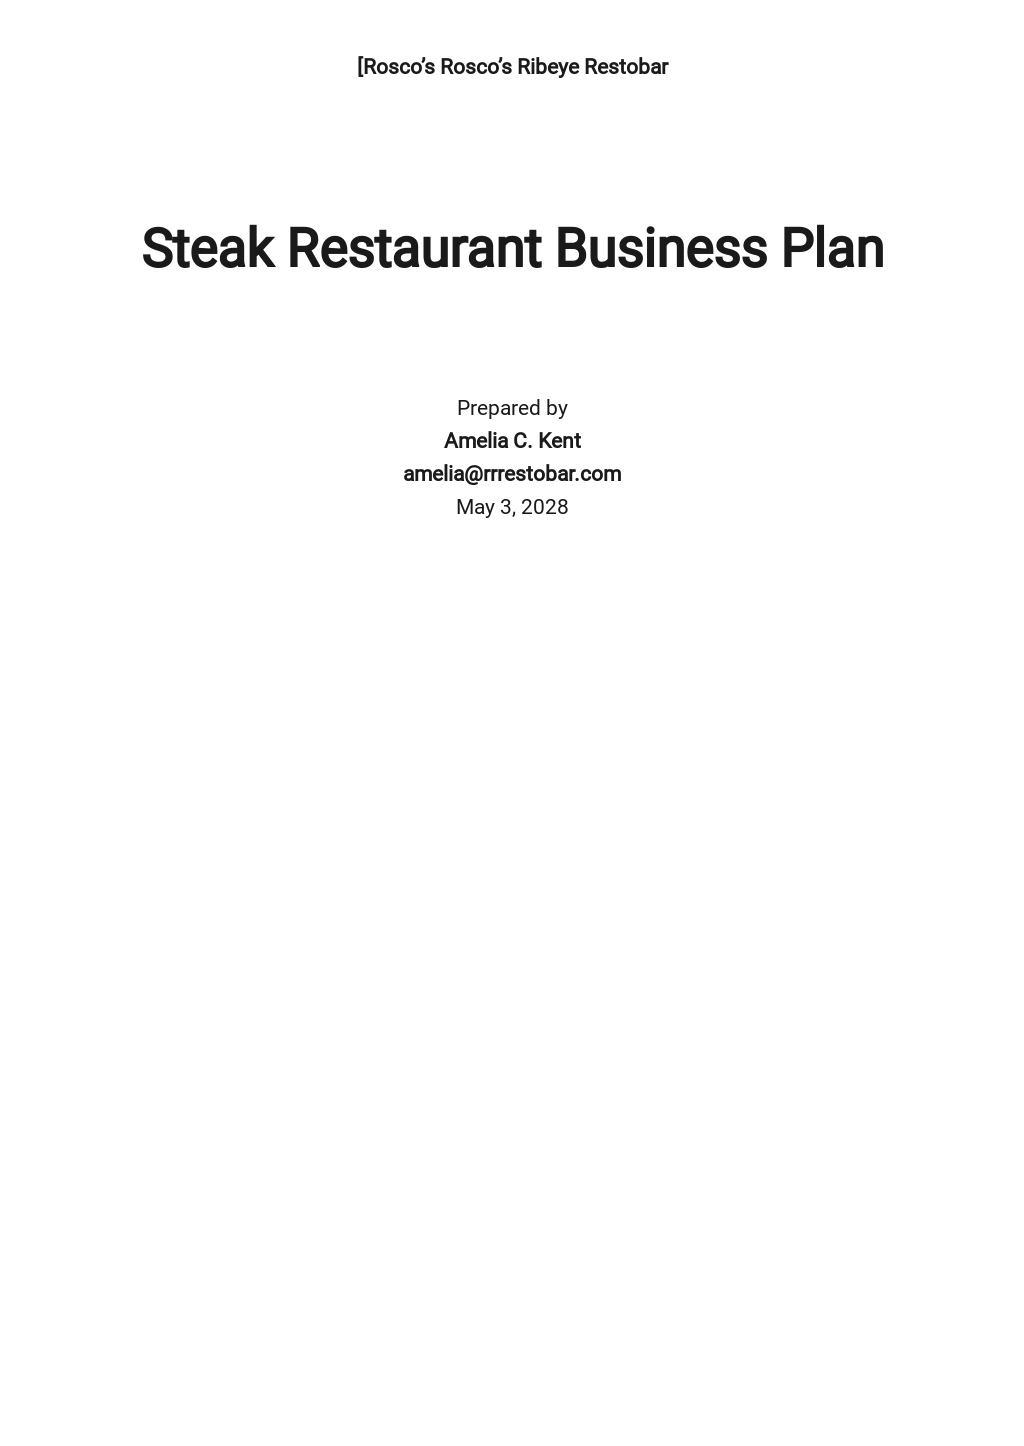 Steak Restaurant Business Plan Template.jpe